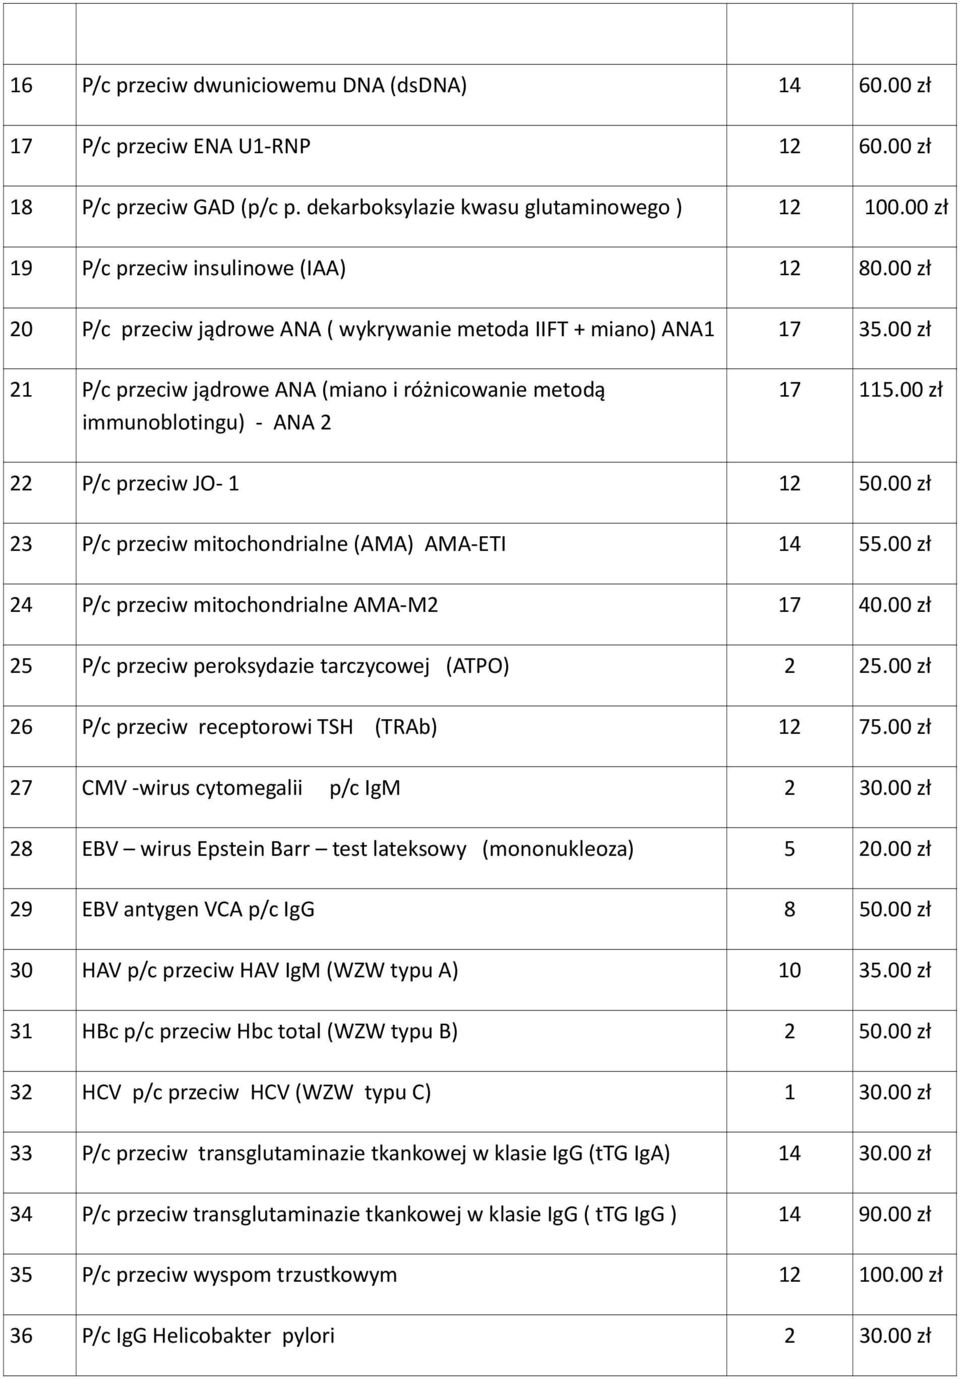 00 zł 21 P/c przeciw jądrowe ANA (miano i różnicowanie metodą immunoblotingu) - ANA 2 17 115.00 zł 22 P/c przeciw JO- 1 12 50.00 zł 23 P/c przeciw mitochondrialne (AMA) AMA-ETI 14 55.